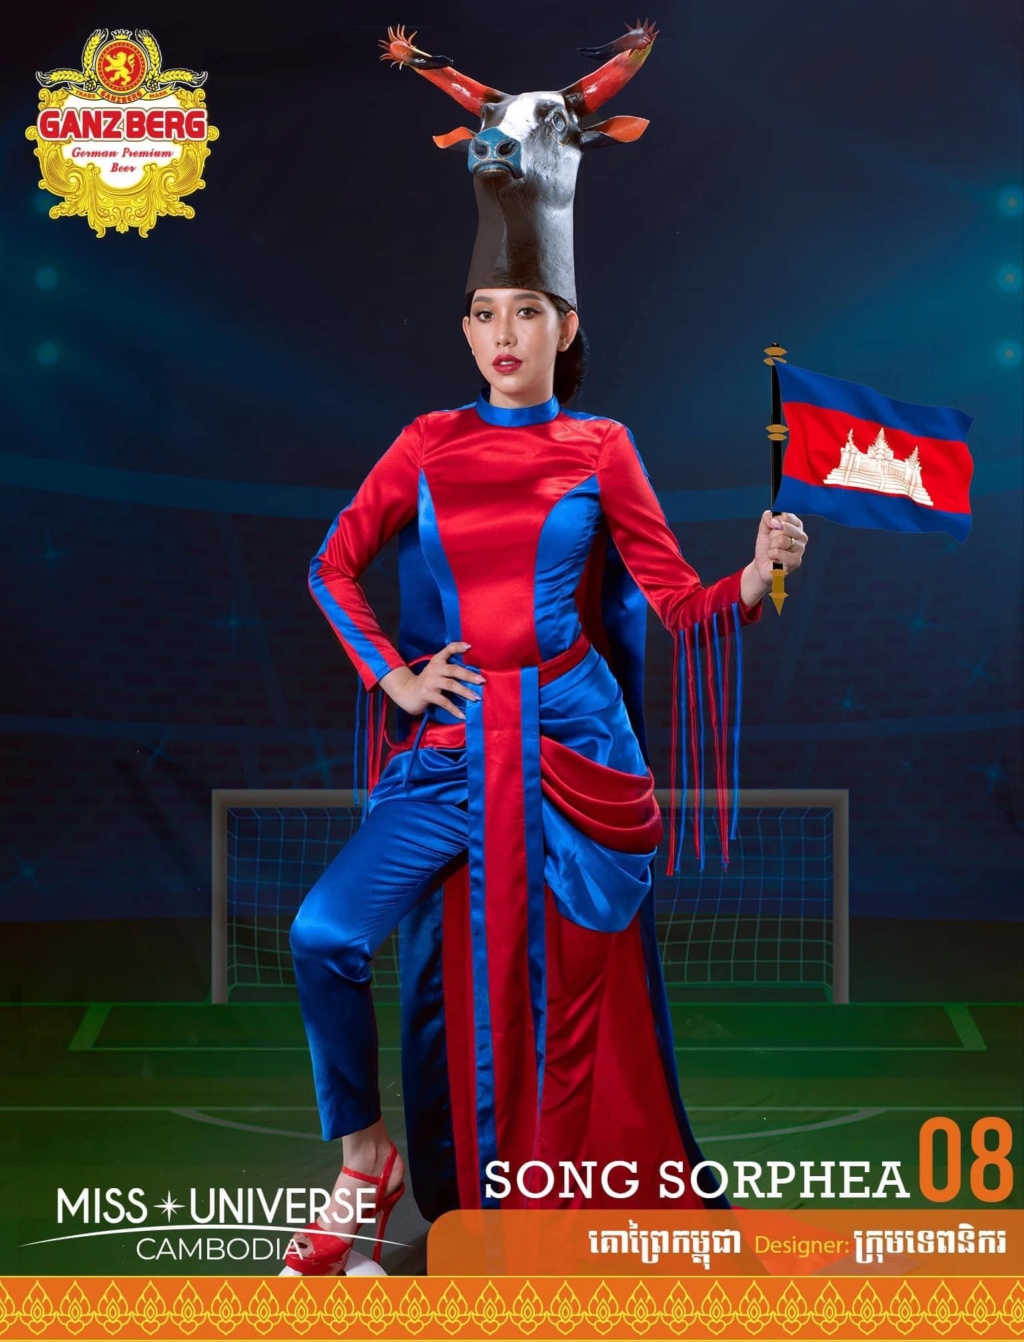 Miss Universe Cambodia 2021 is Ngin Marady 8185